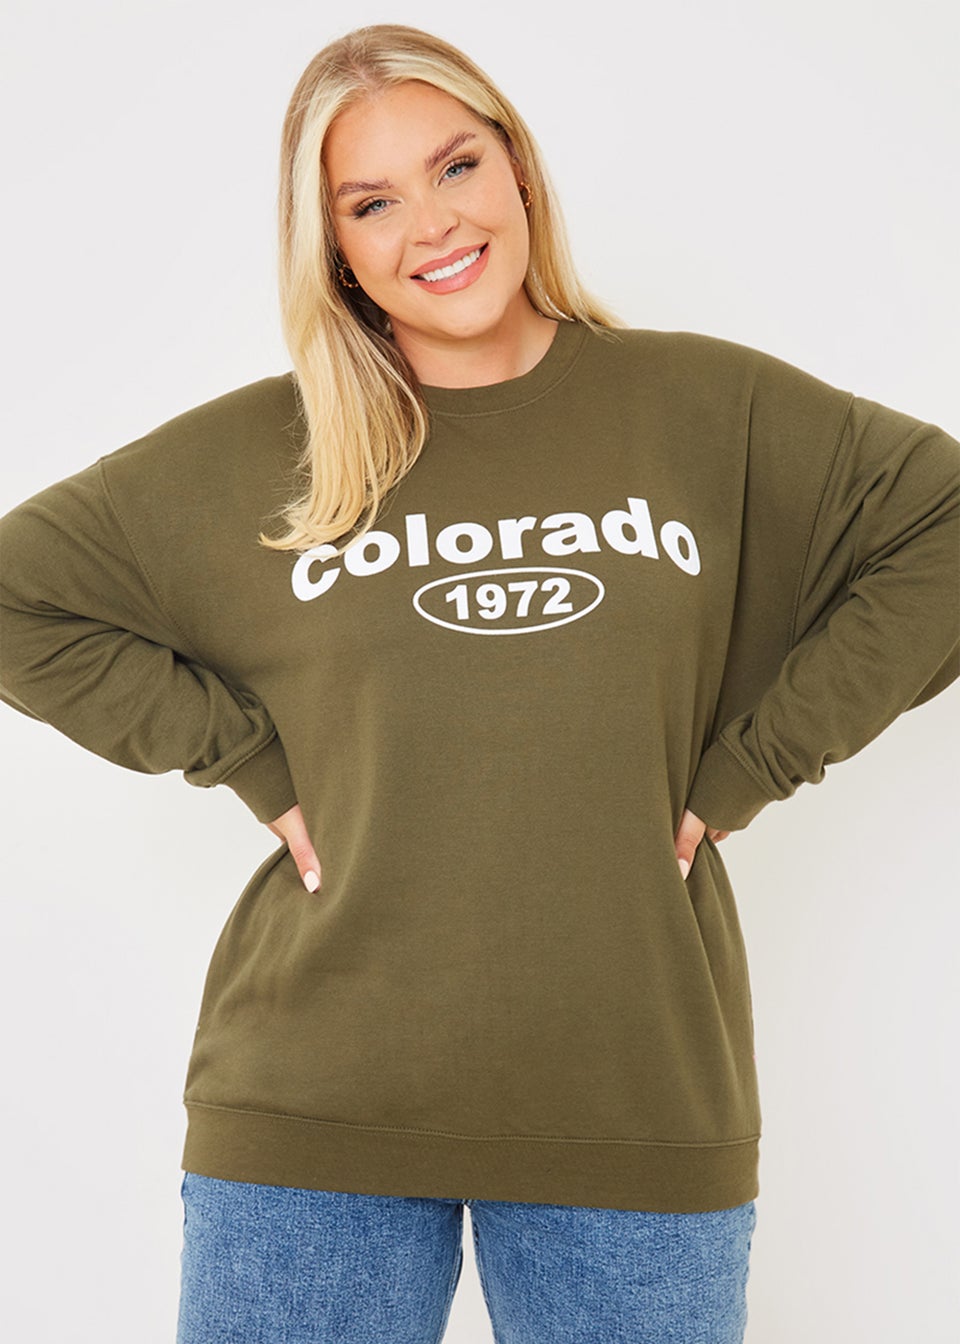 In the Style Gemma Atkinson Green Colorado Sweatshirt